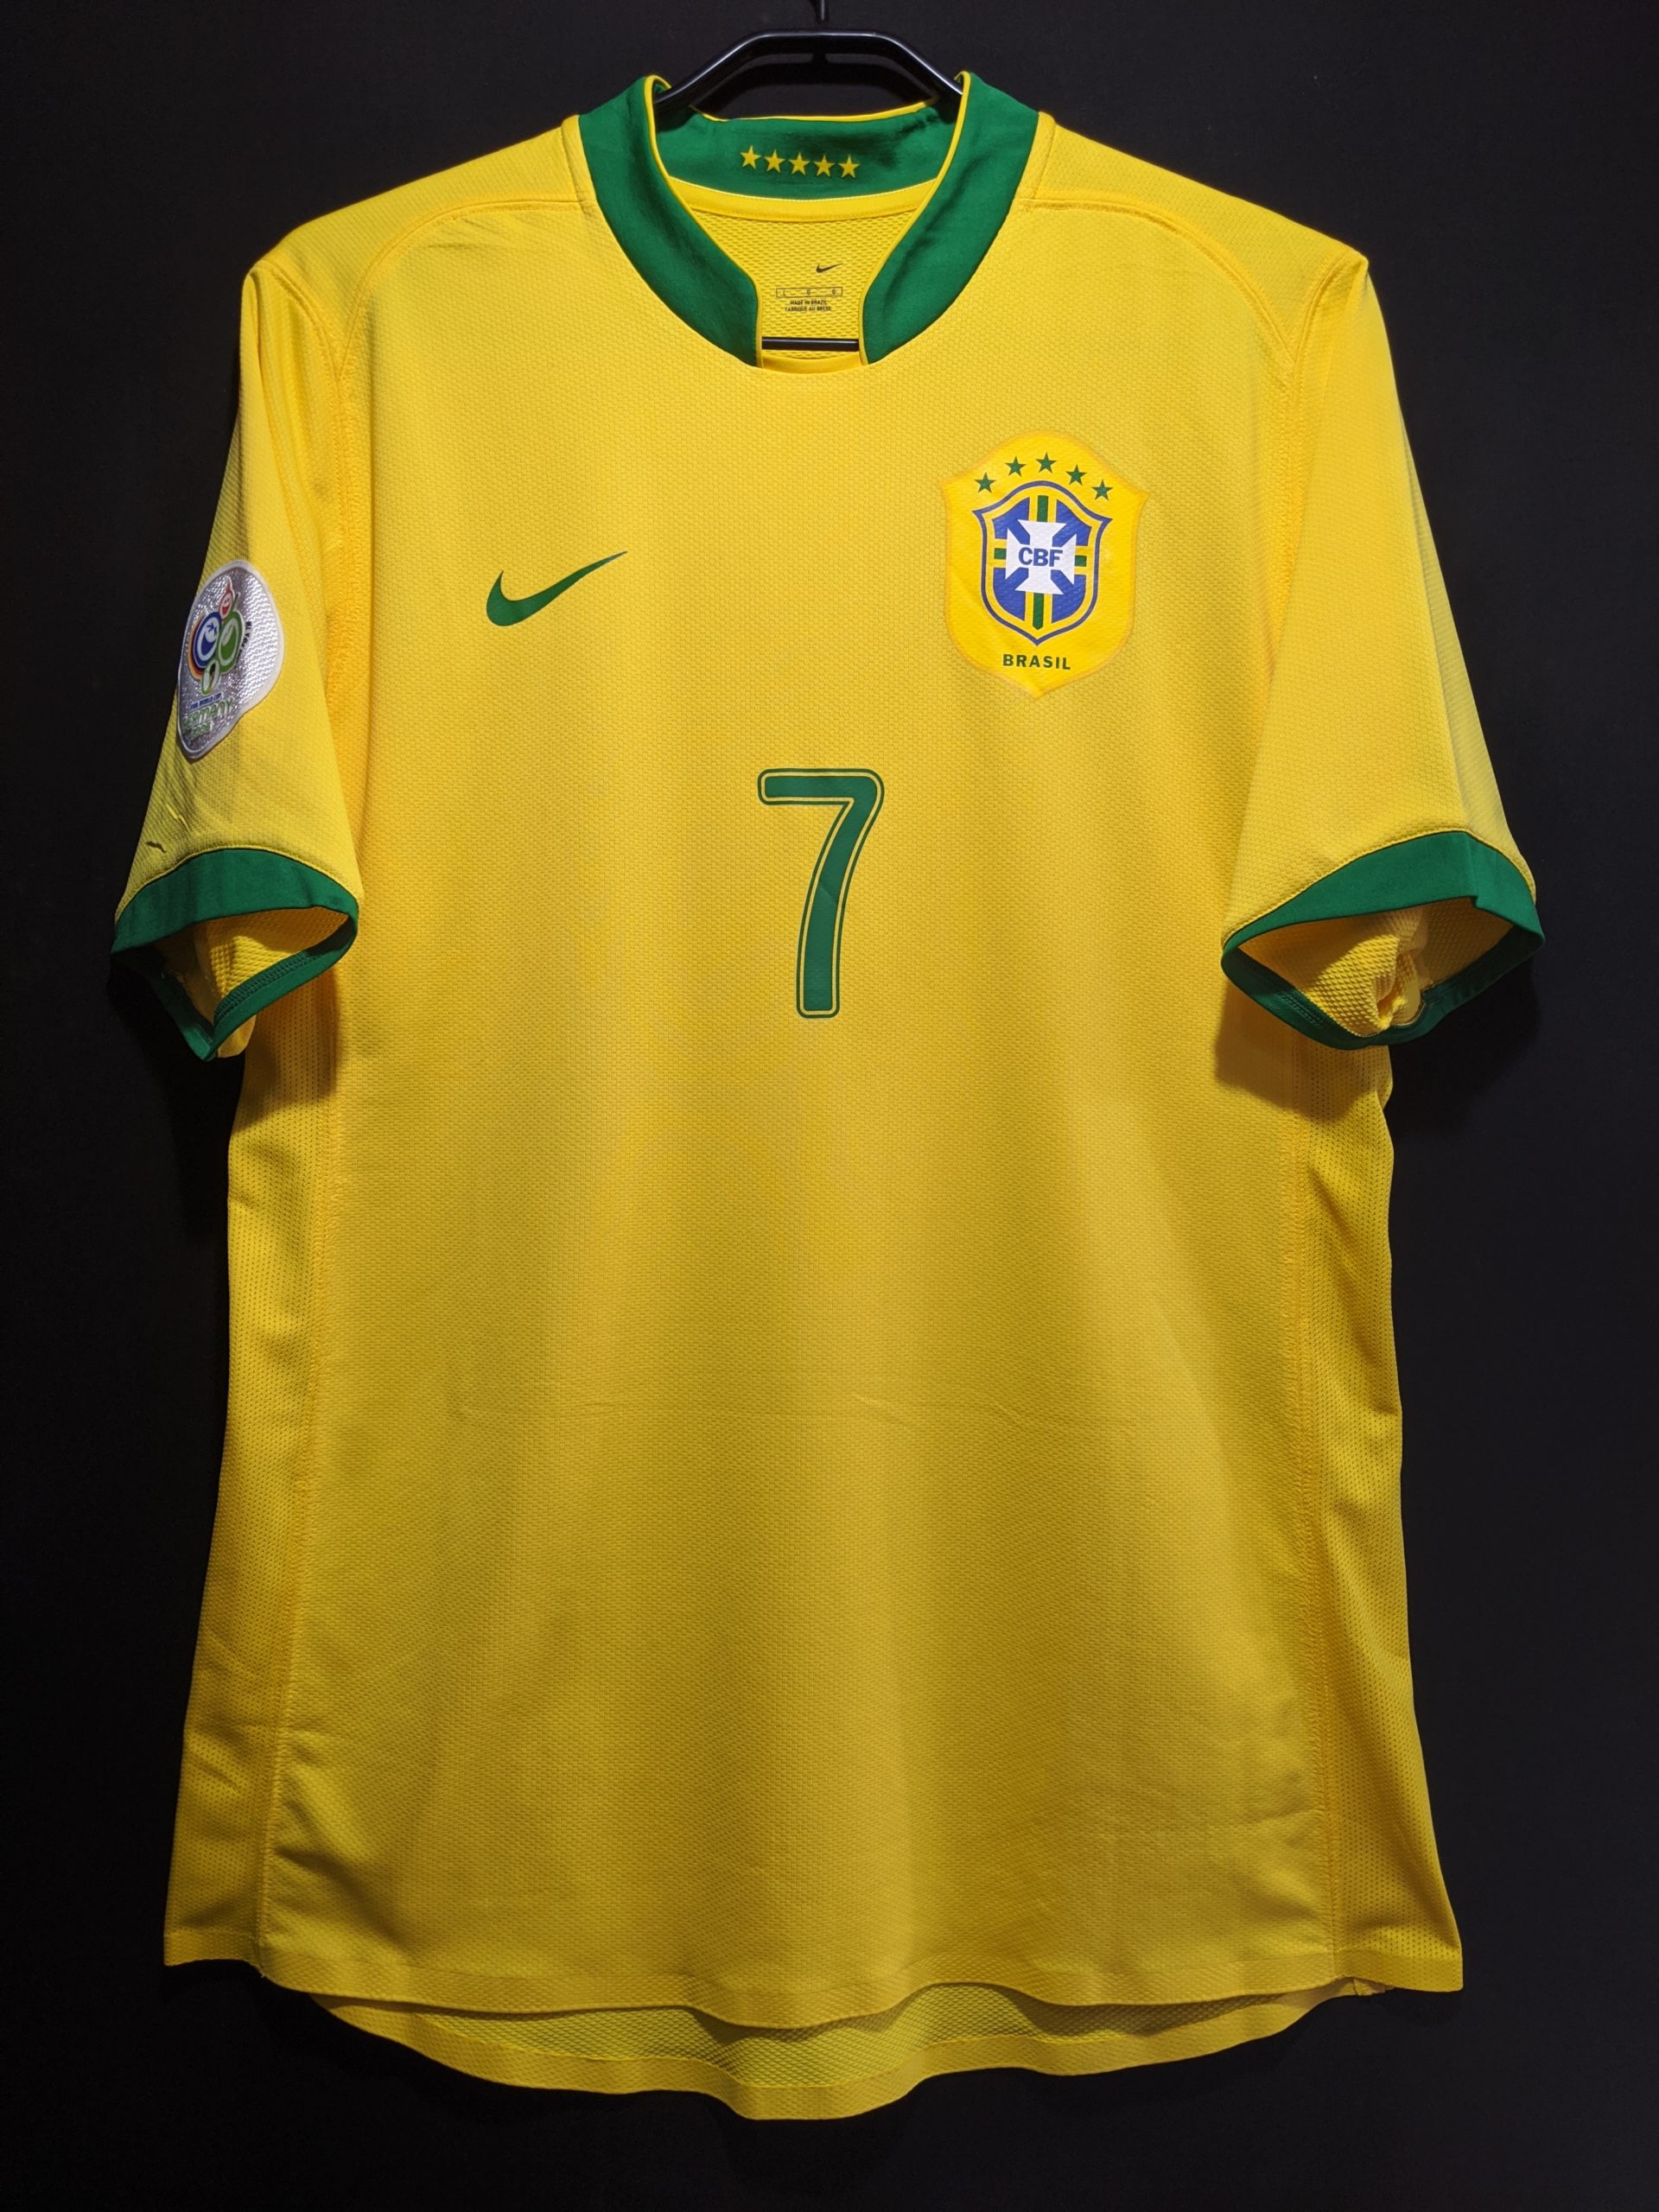 選手用 2 ヴィンス君の選手用ユニフォーム紹介 06ブラジル代表 サッカーユニフォーム狂の唄